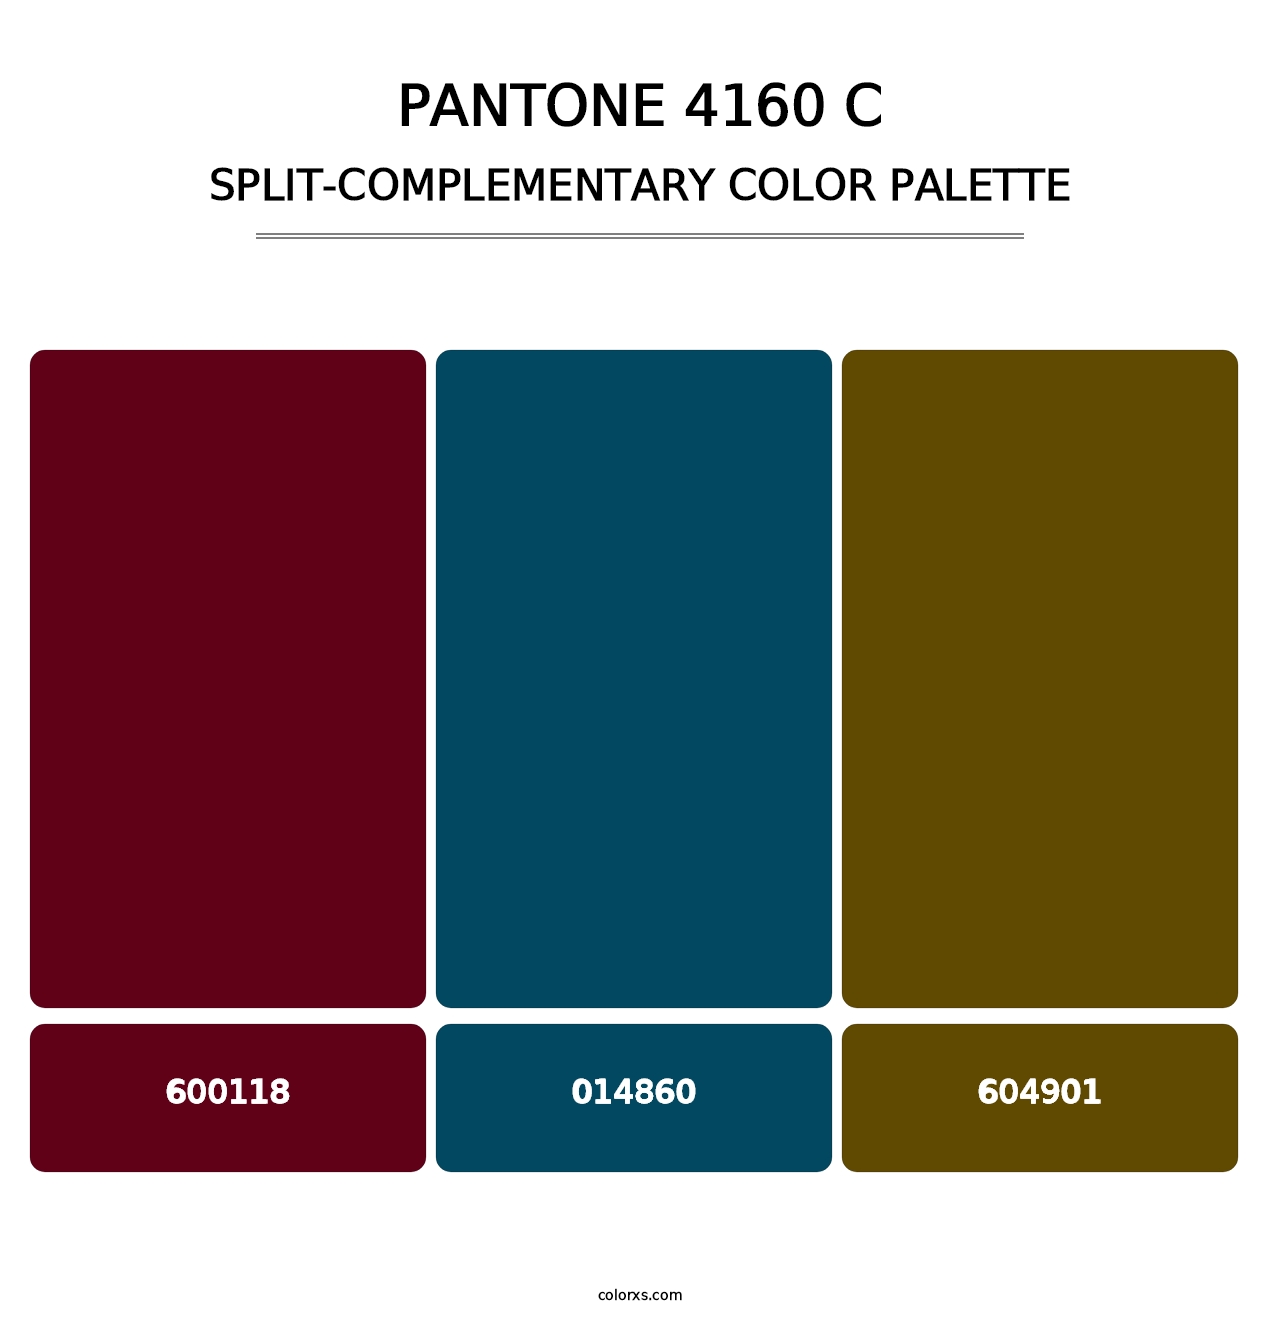 PANTONE 4160 C - Split-Complementary Color Palette